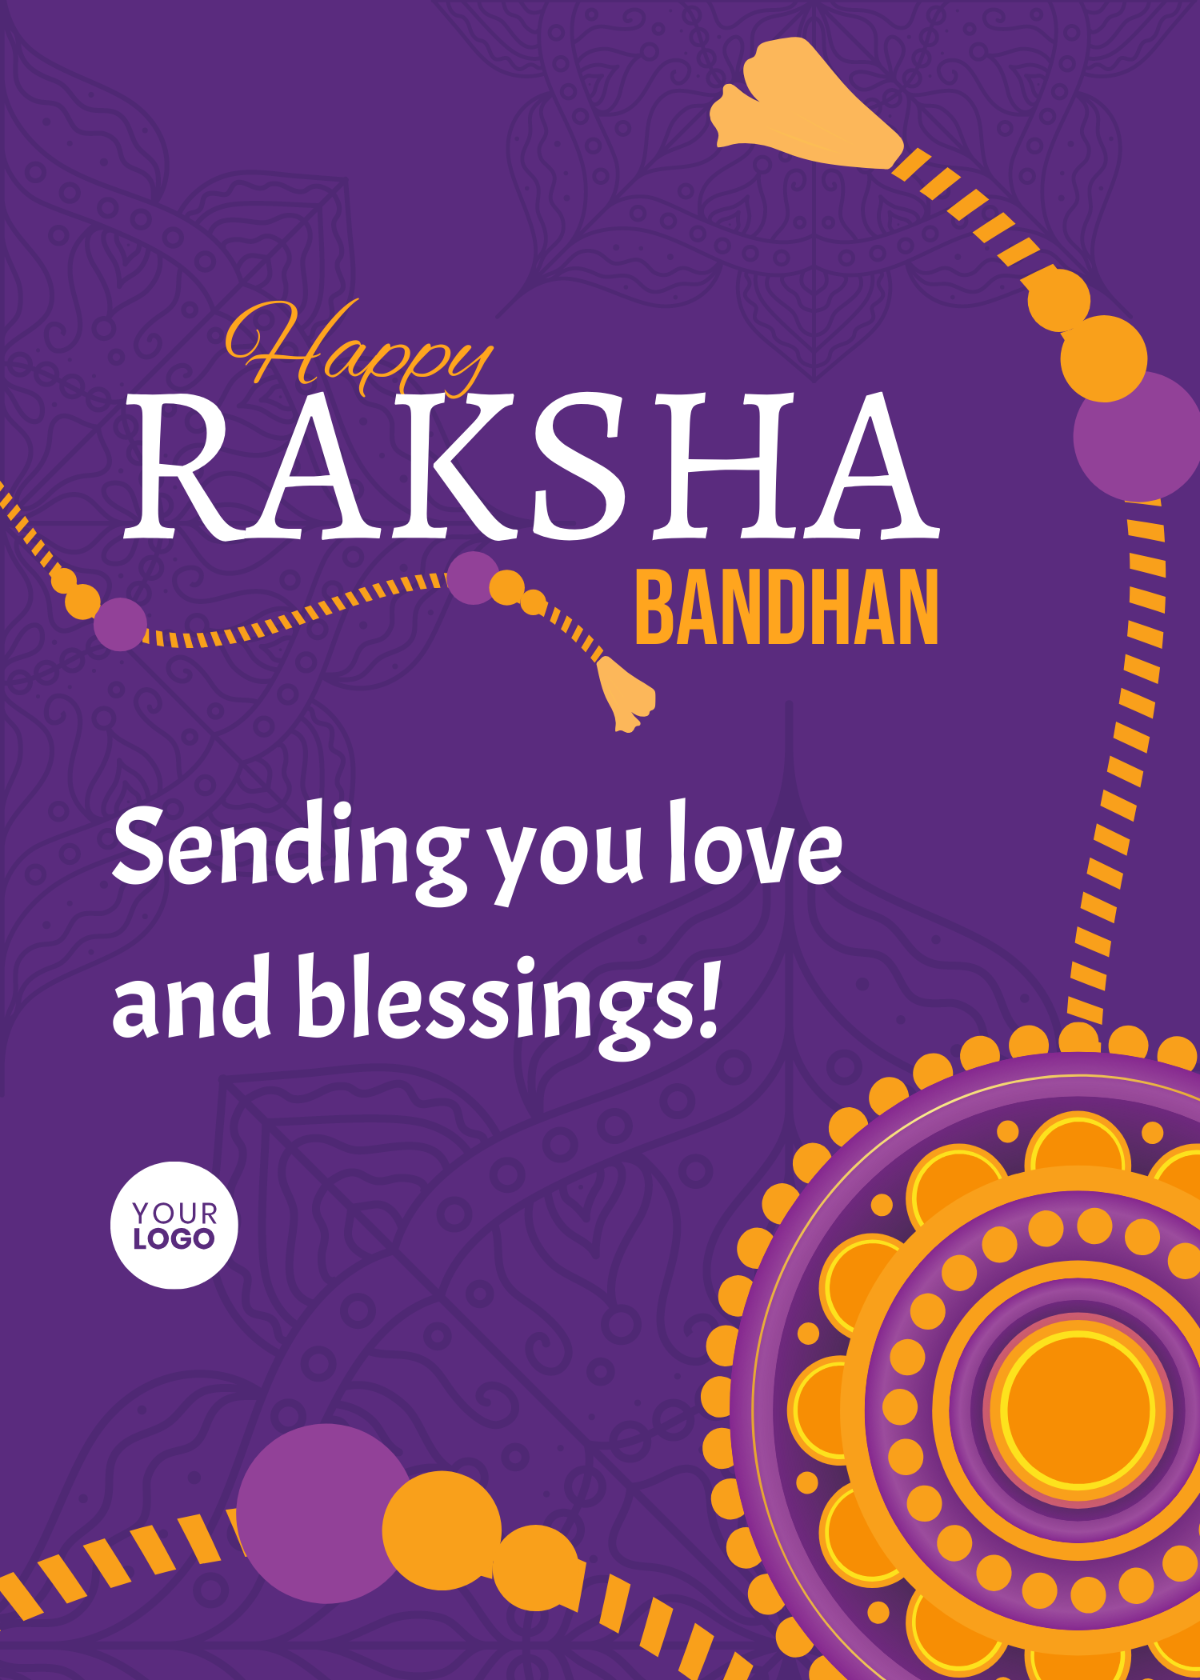 Raksha Bandhan Short Wishes